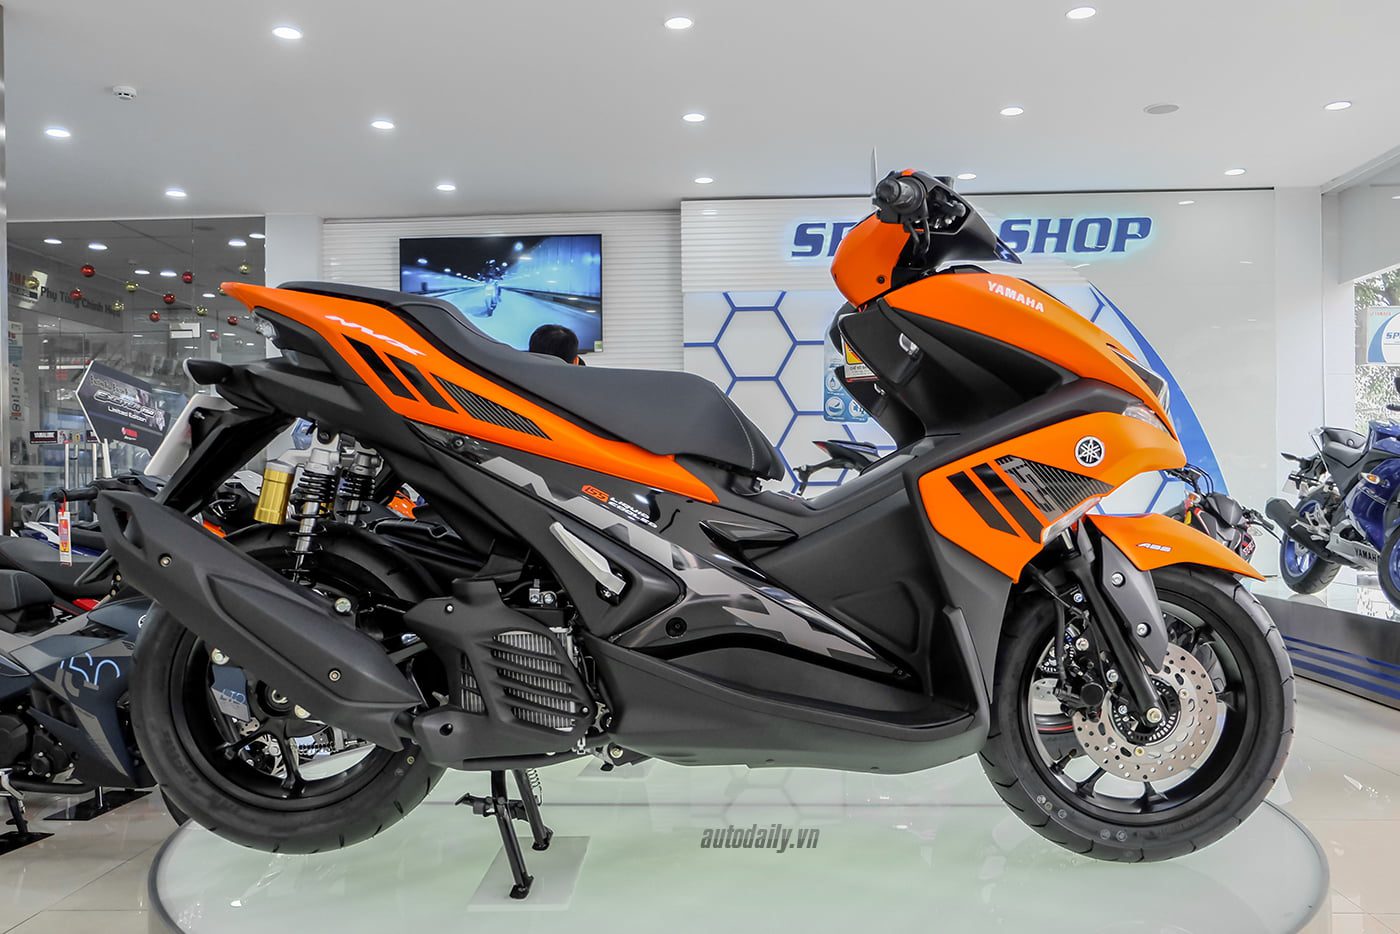 Đánh giá xe Yamaha NVX 2019 Hình ảnh vận hành và giá bán thị trường